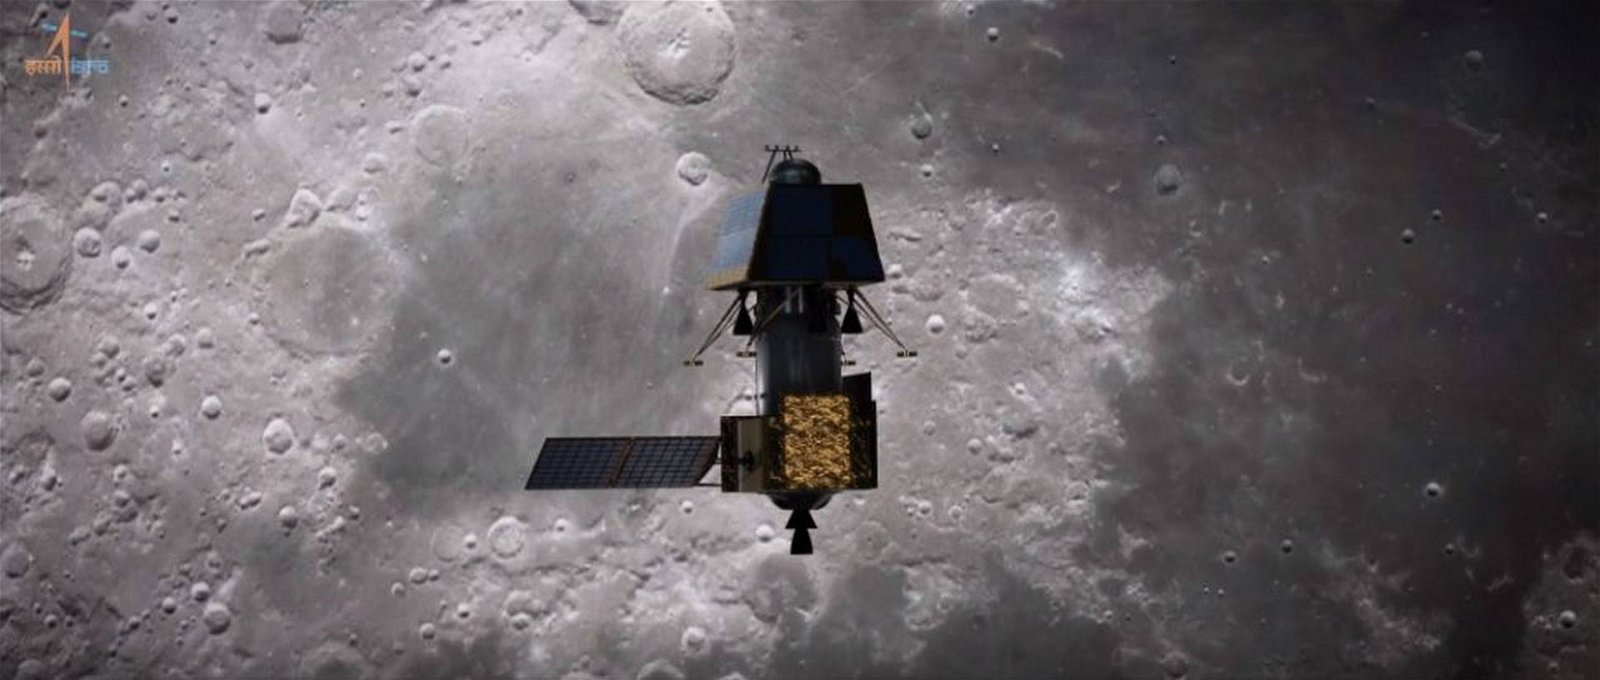 Immagine di India alla conquista della Luna, a luglio lancerà un lander, un rover e un orbiter